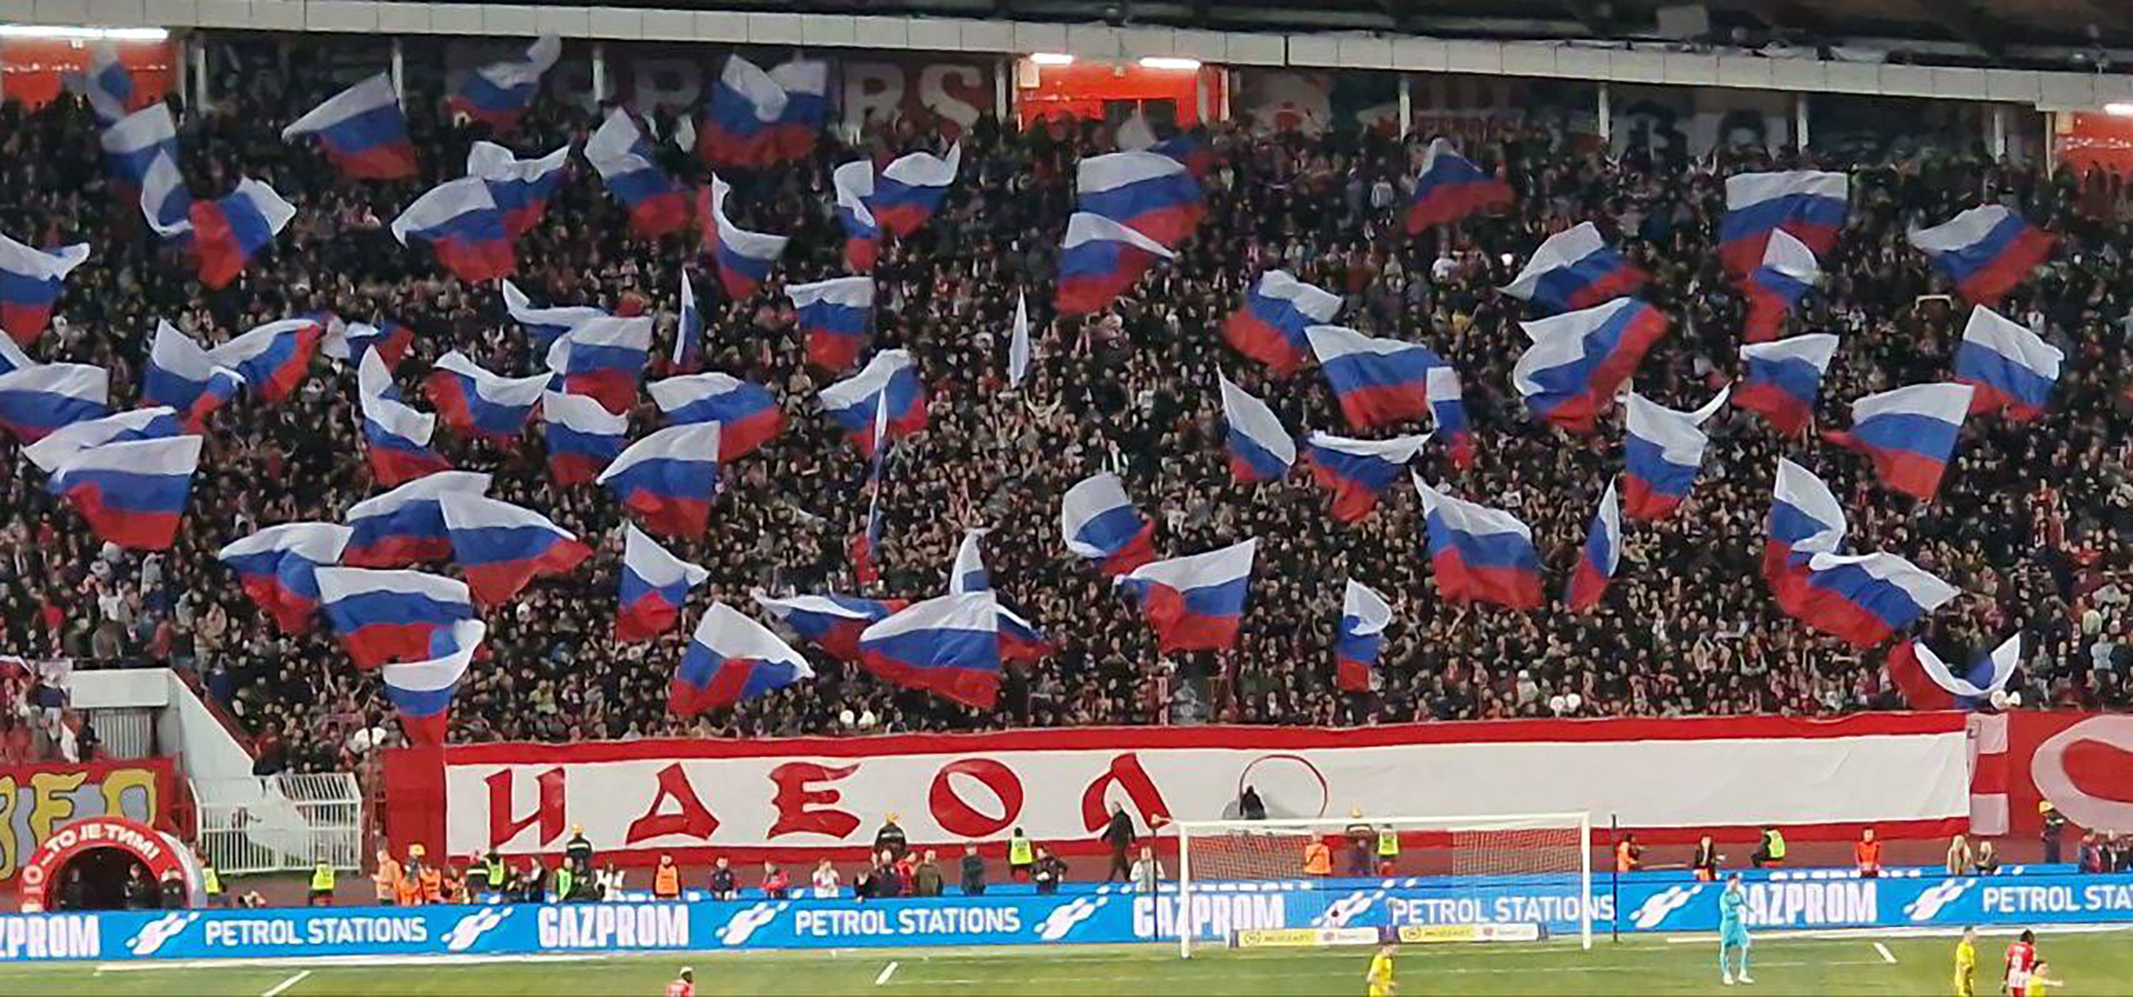 Сербські чи російські стадіони? Футбол, політика та організована злочинність у Сербії – Любомир Філіпович